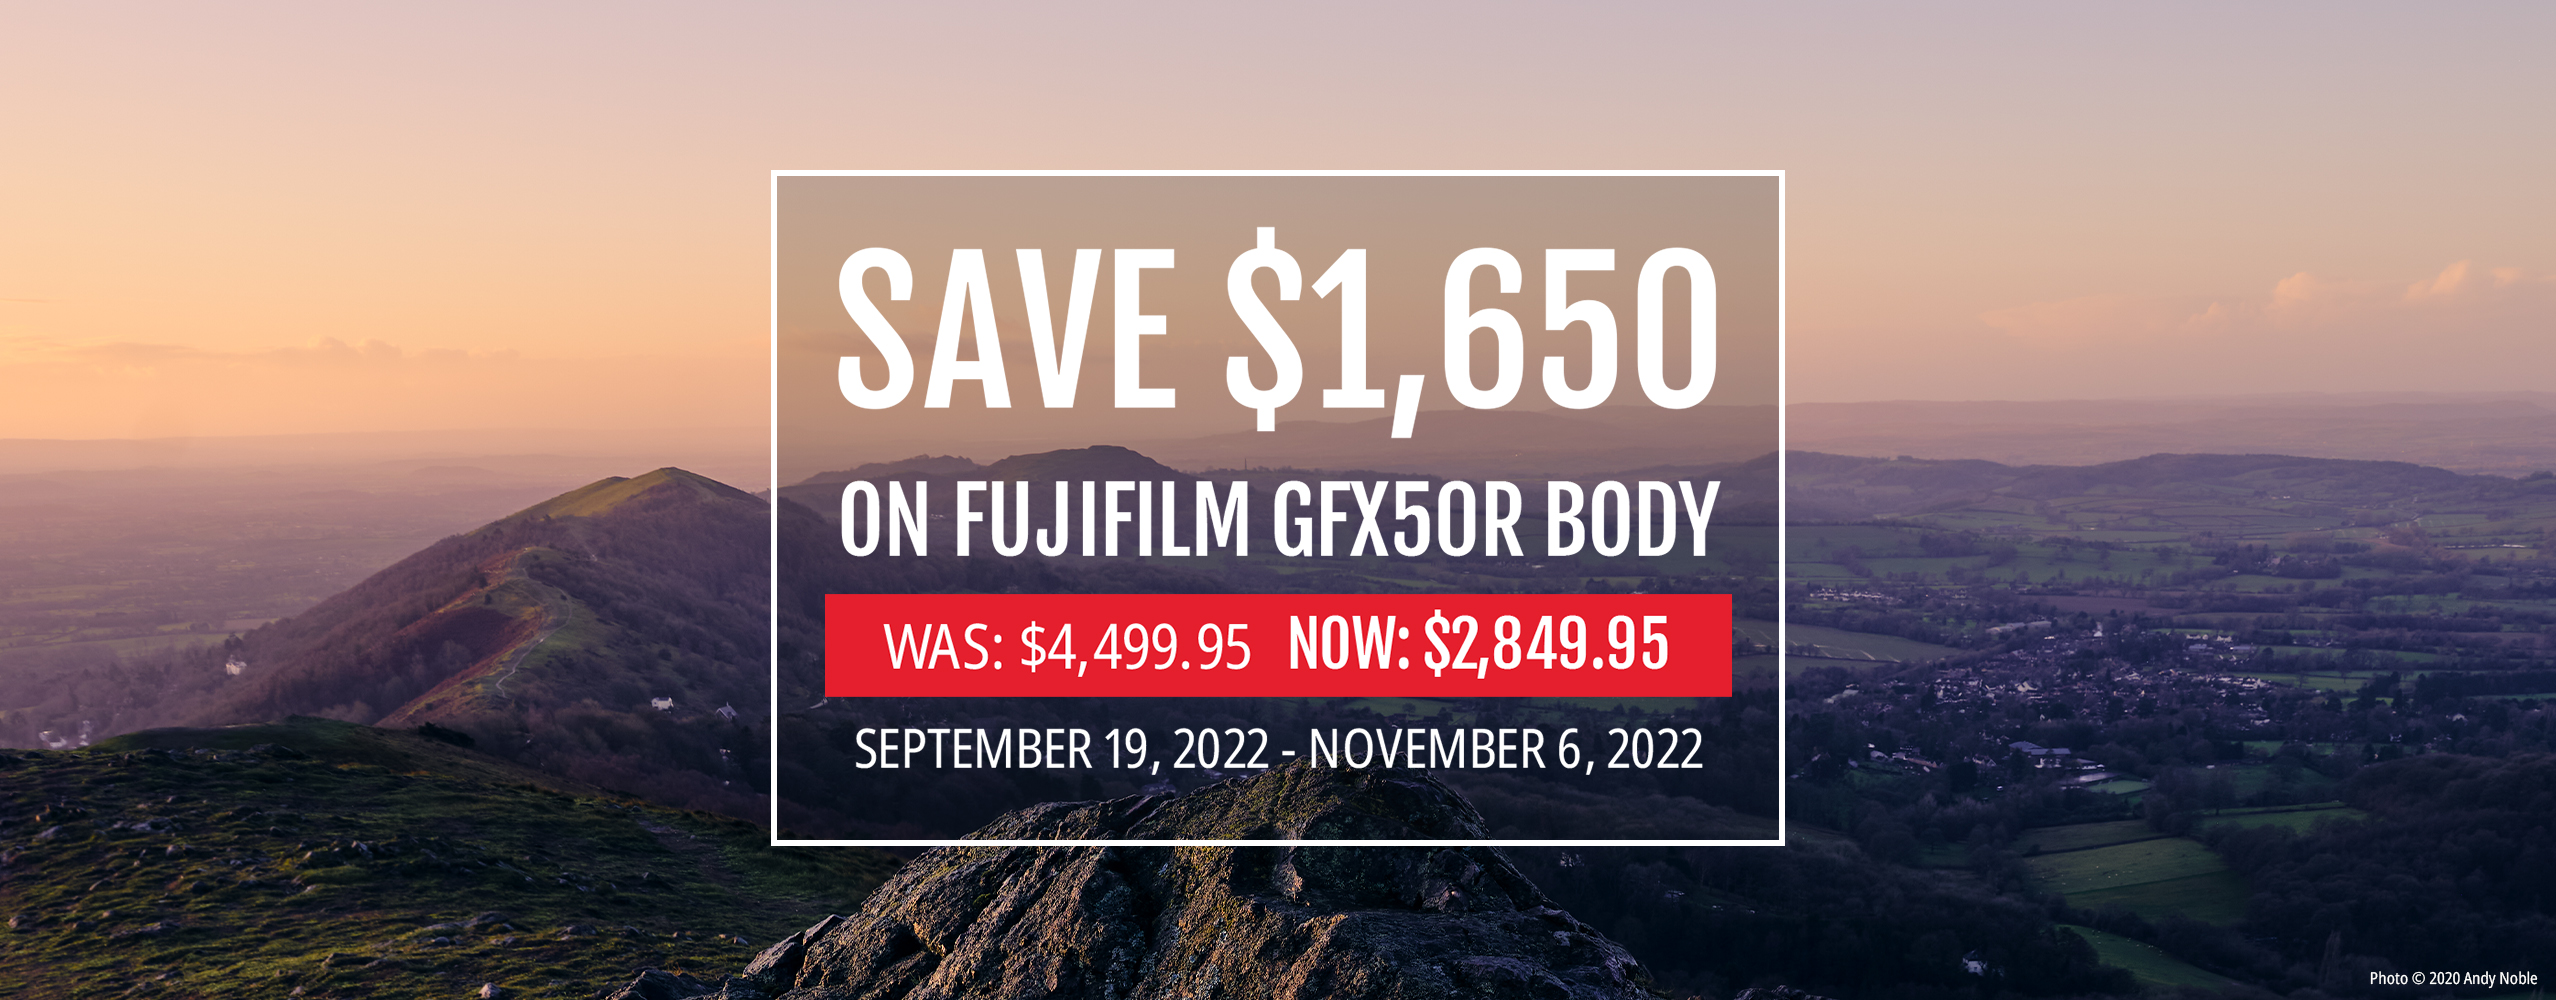 GFX50R Offer September